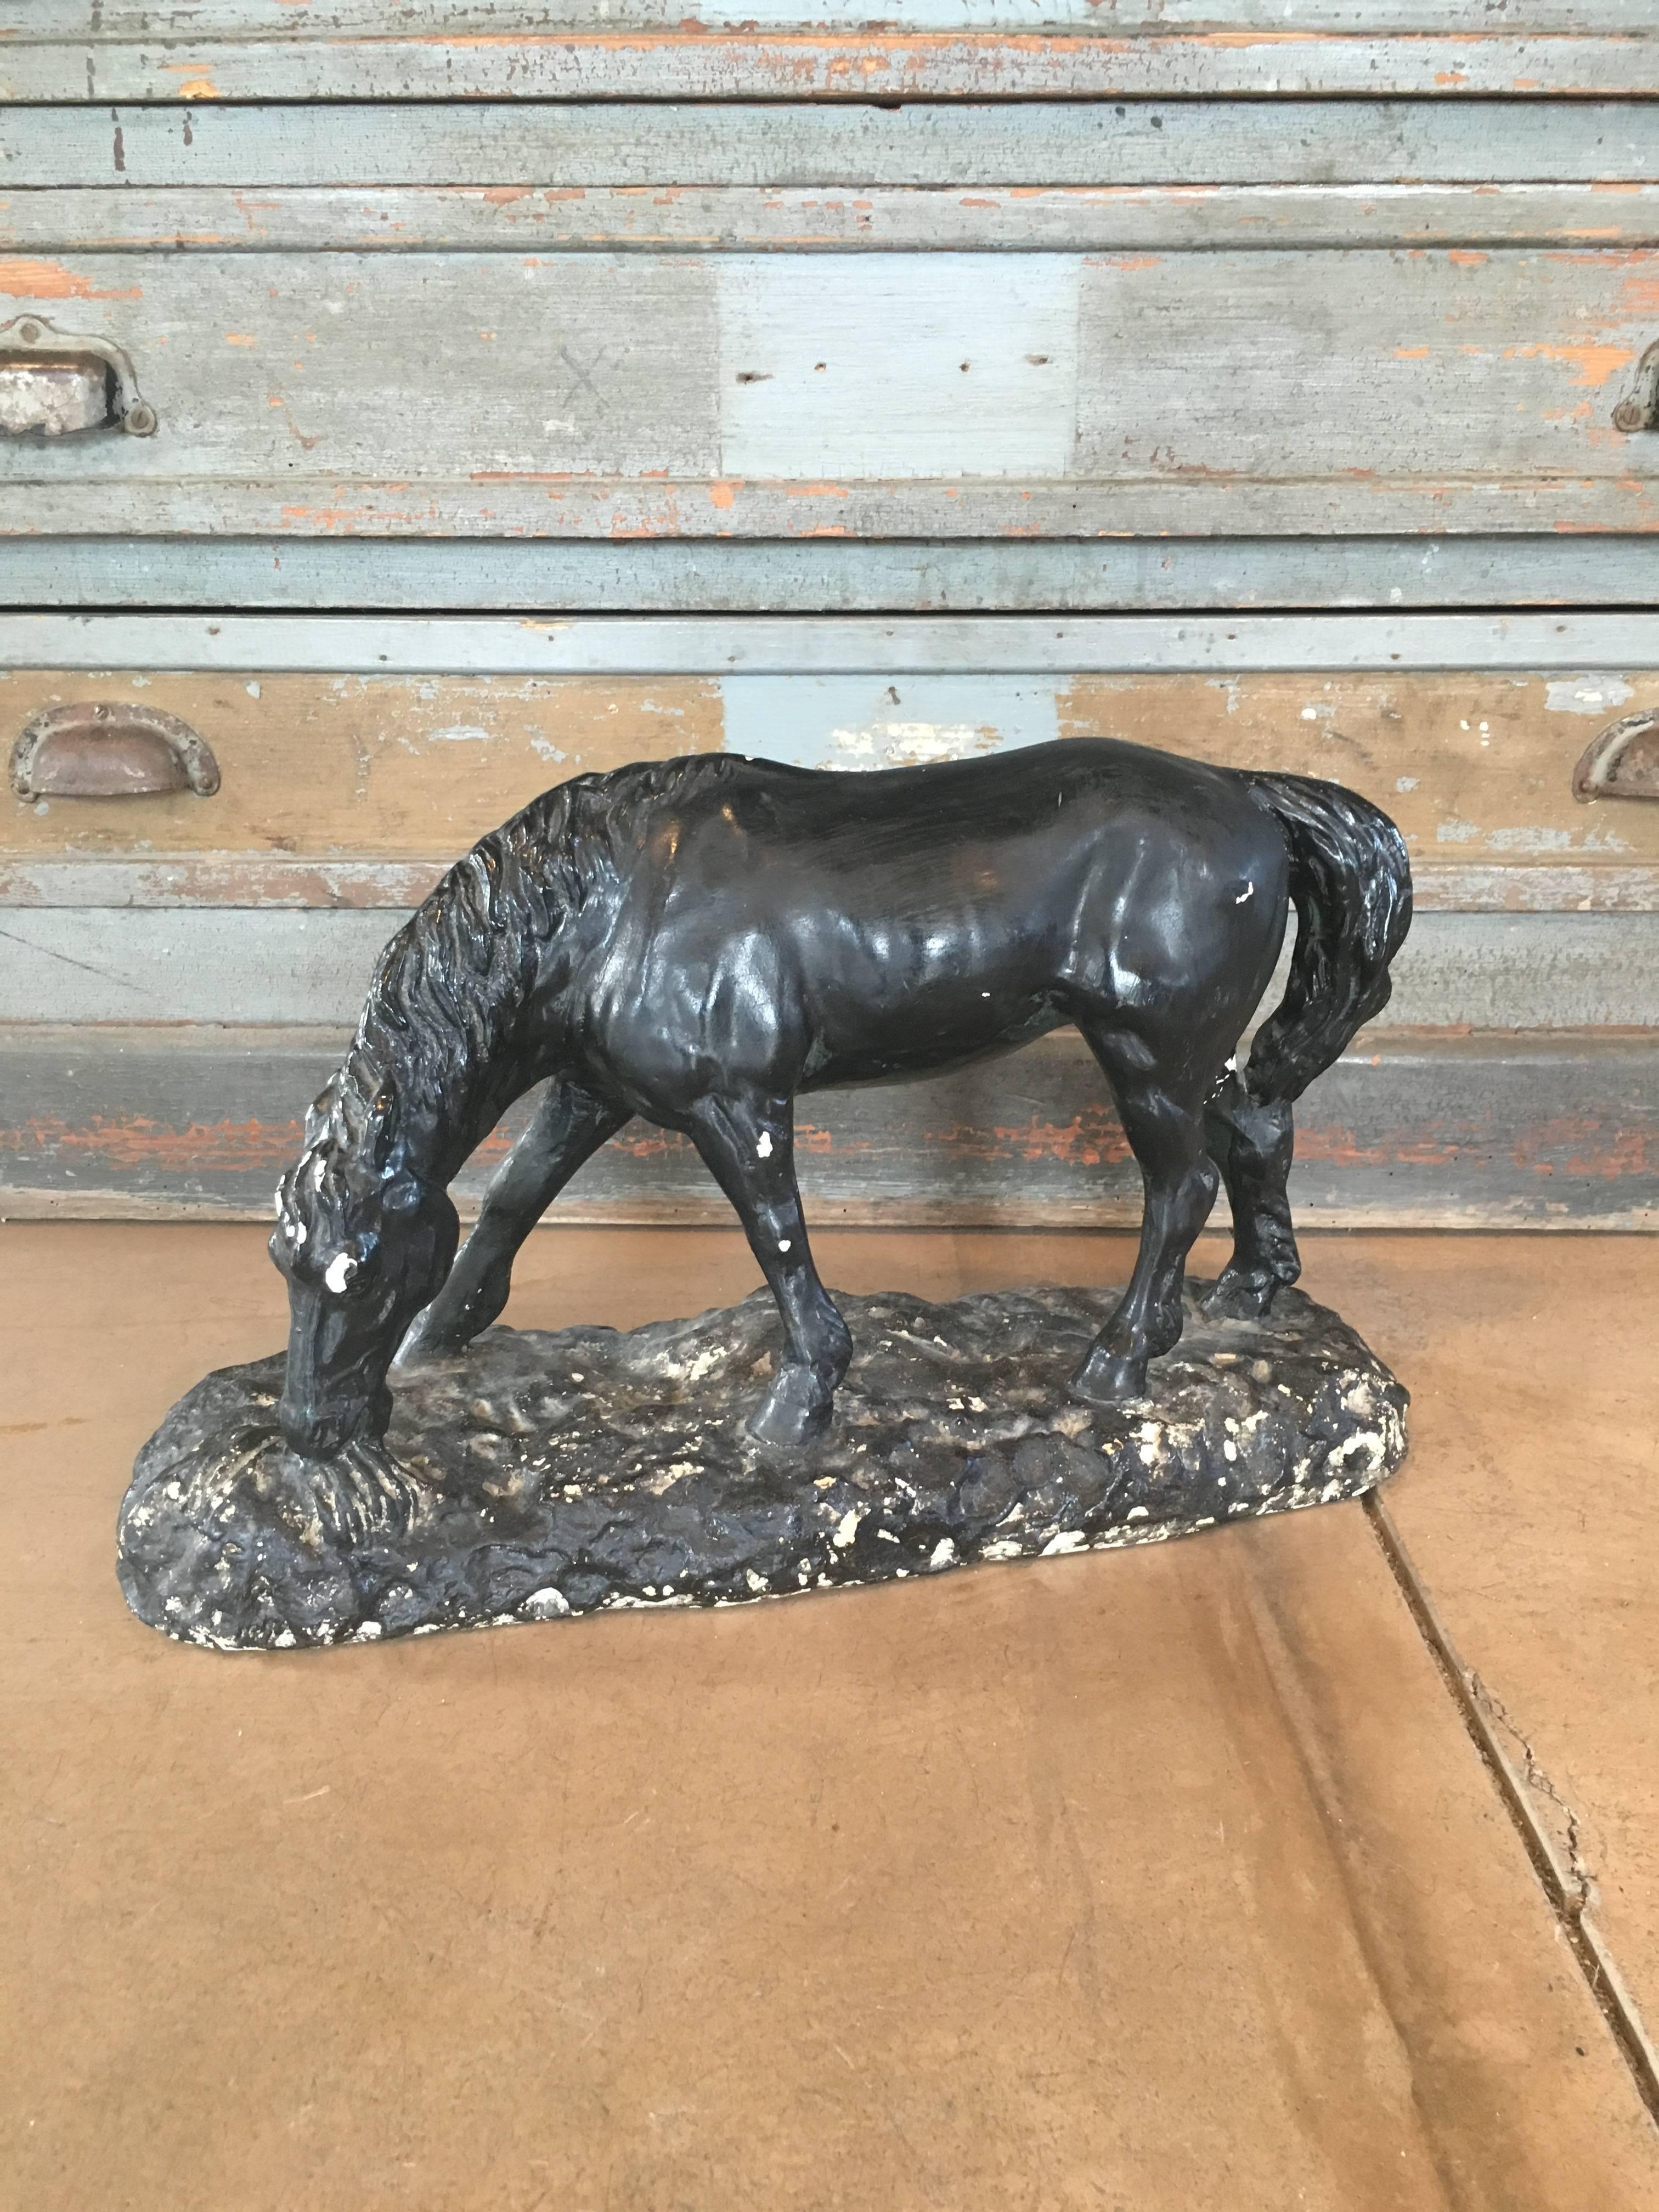 Vieille statue de cheval en plâtre, circa 1900, France. Peint en noir avec un peu de plâtre visible en dessous. Usure mineure correspondant à l'âge et à l'utilisation.

